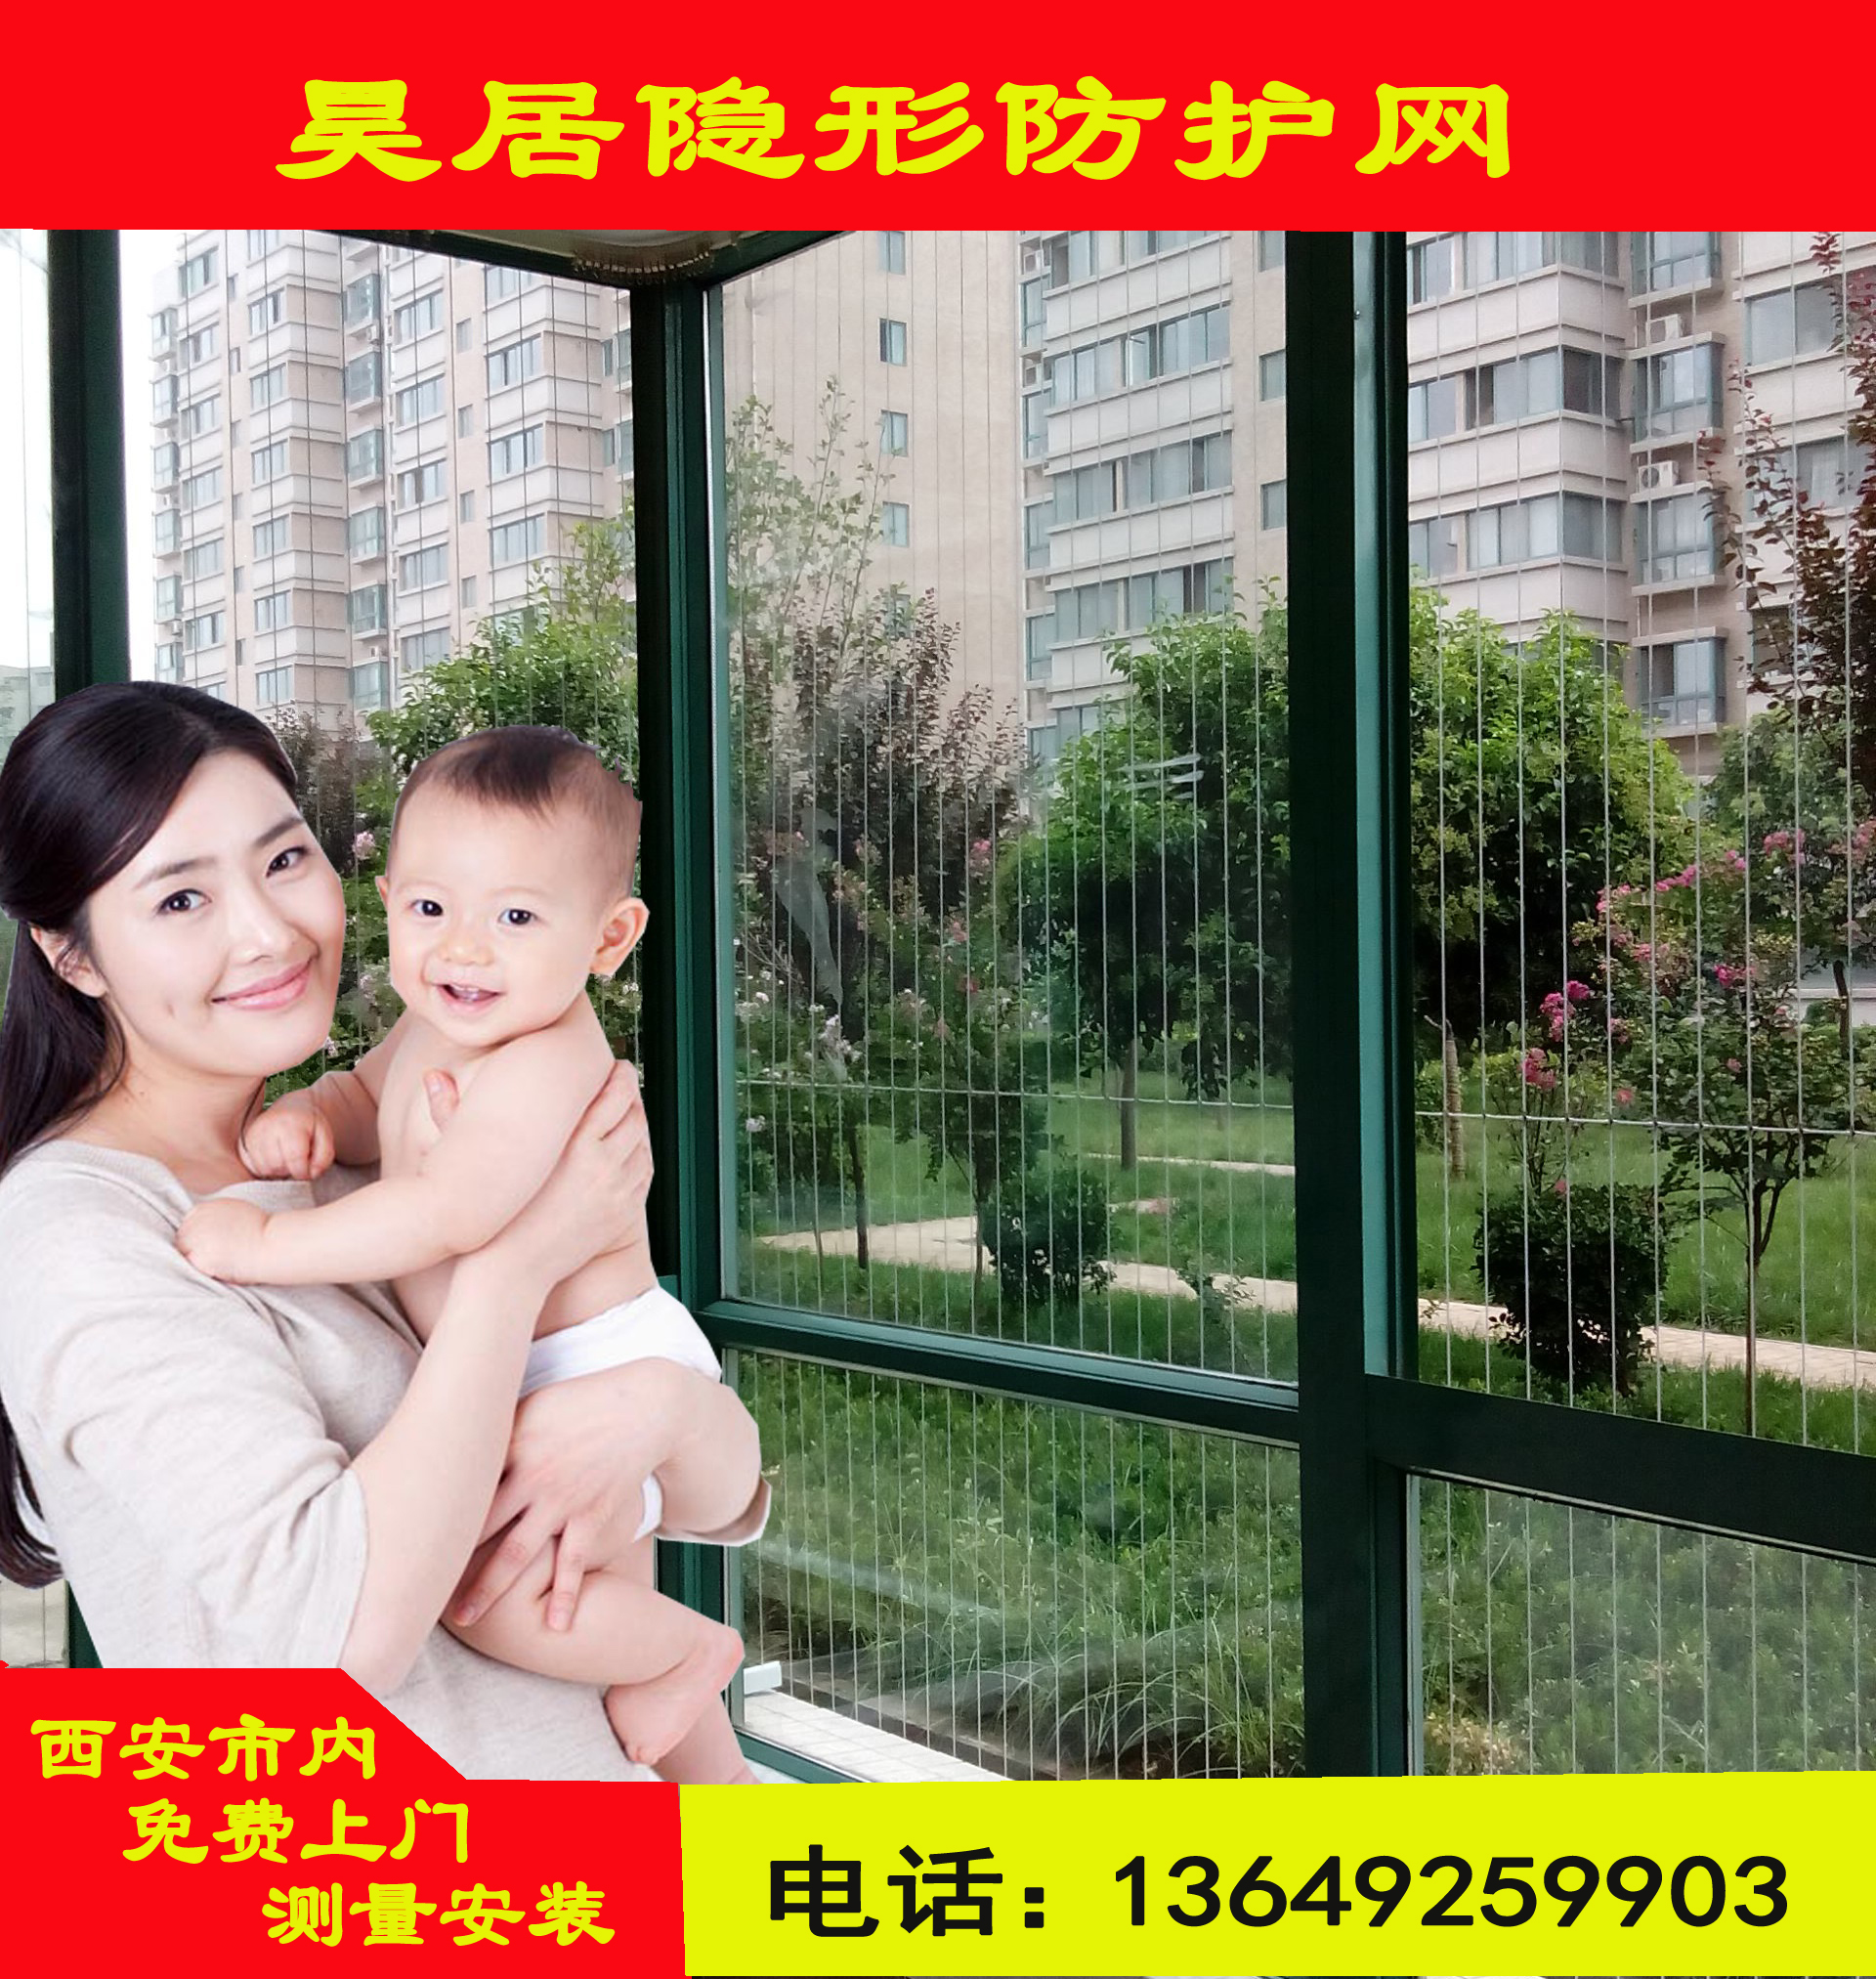 西安高层儿童隐形防护网防护栏 不锈钢316钢丝阳台窗隐形防盗网